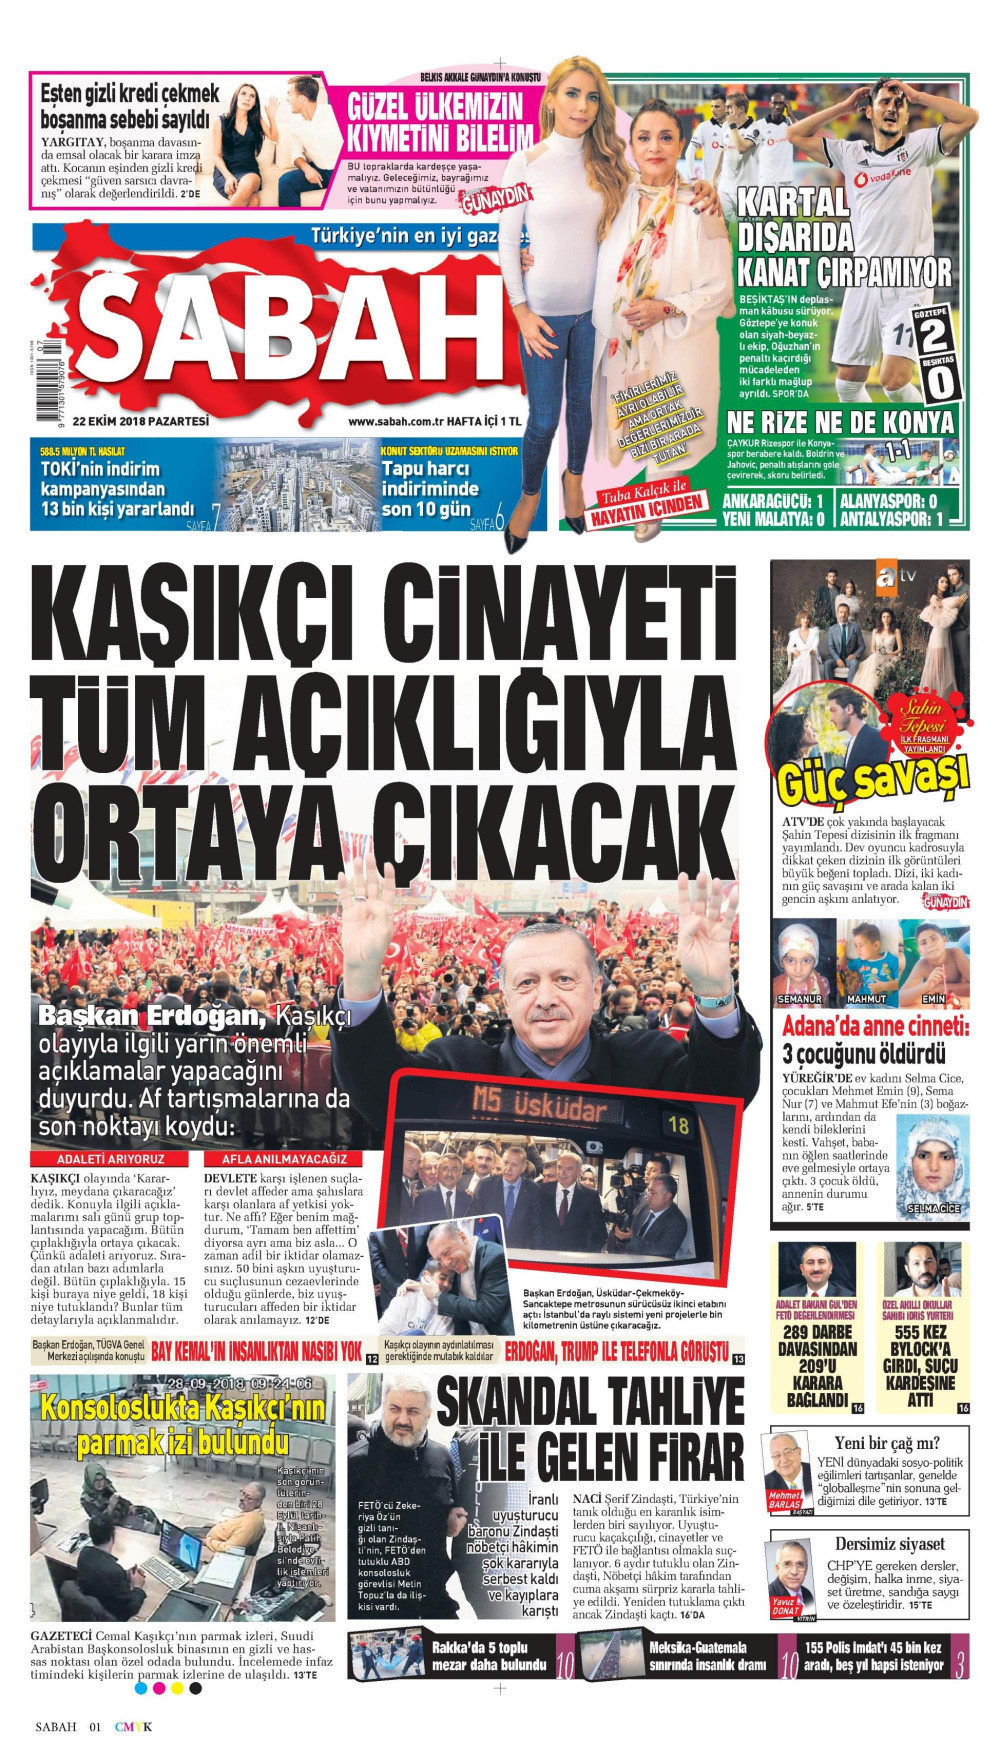 Gazete manşetleri 22 Ekim 2018 Hürriyet - Sözcü - Posta - Milliyet